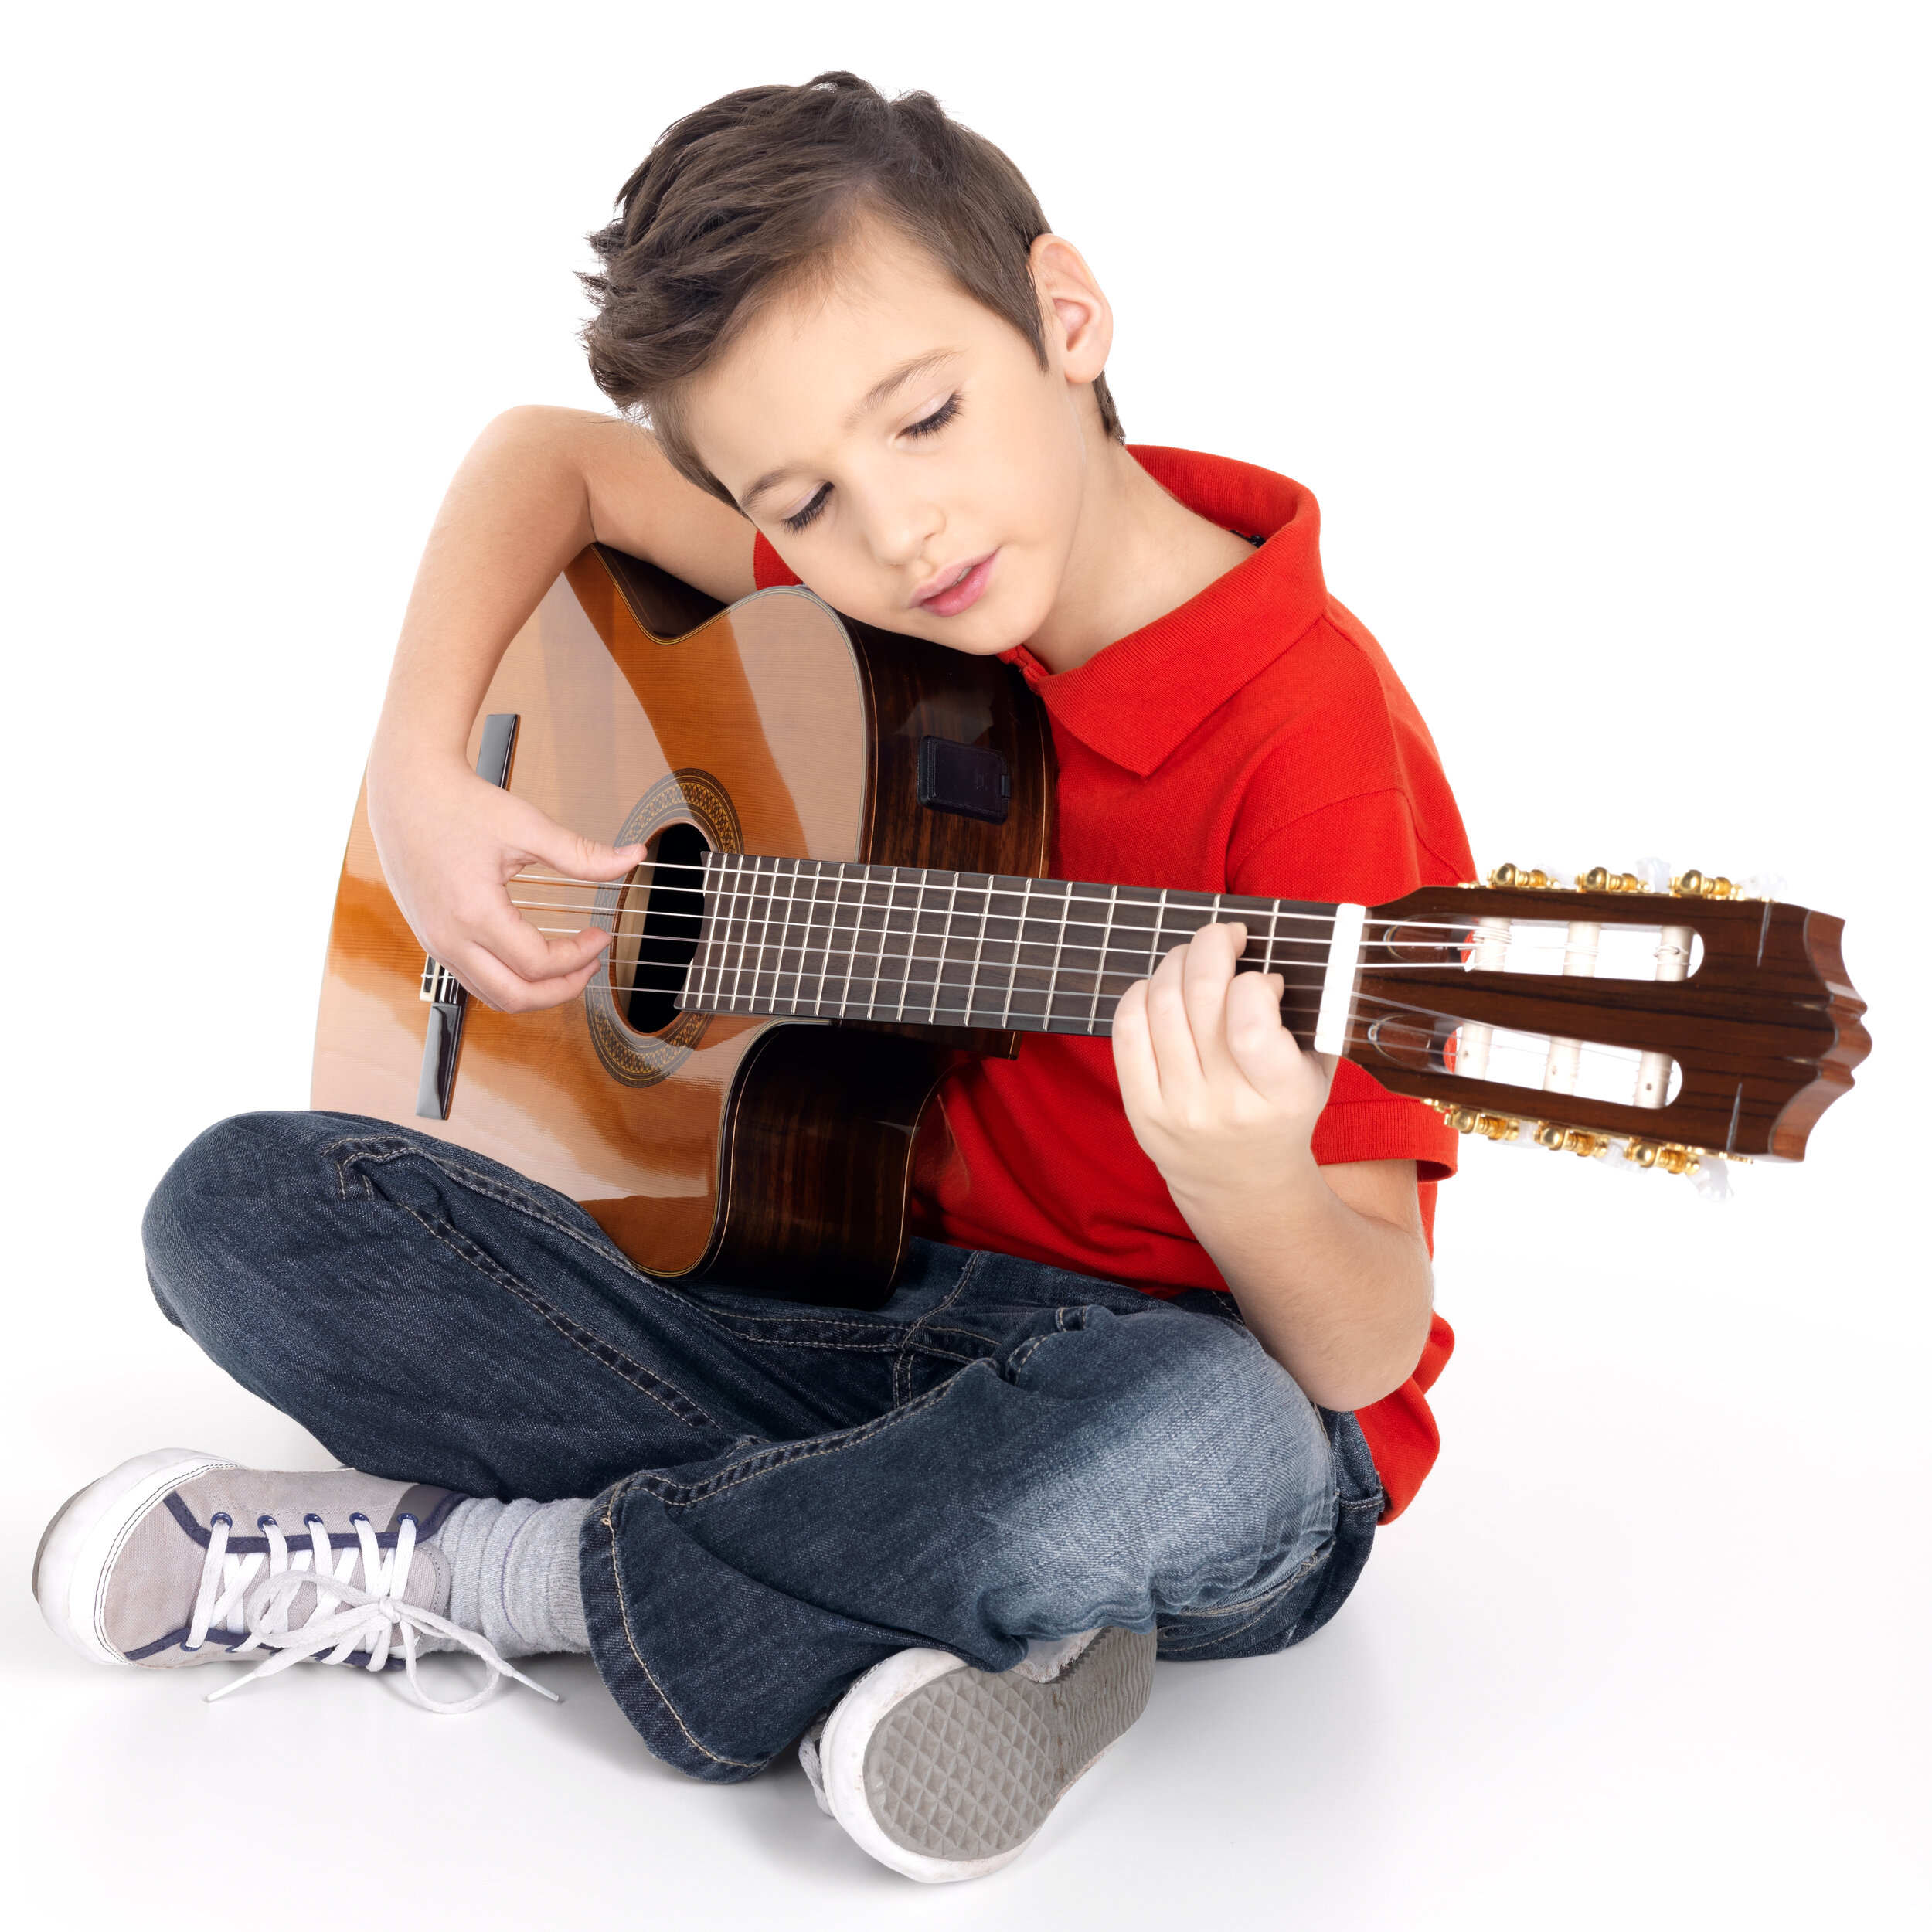 He can the guitar. Гитара для детей. Мальчик с гитарой. Мальчик гитарист. Мальчик с электрогитарой.